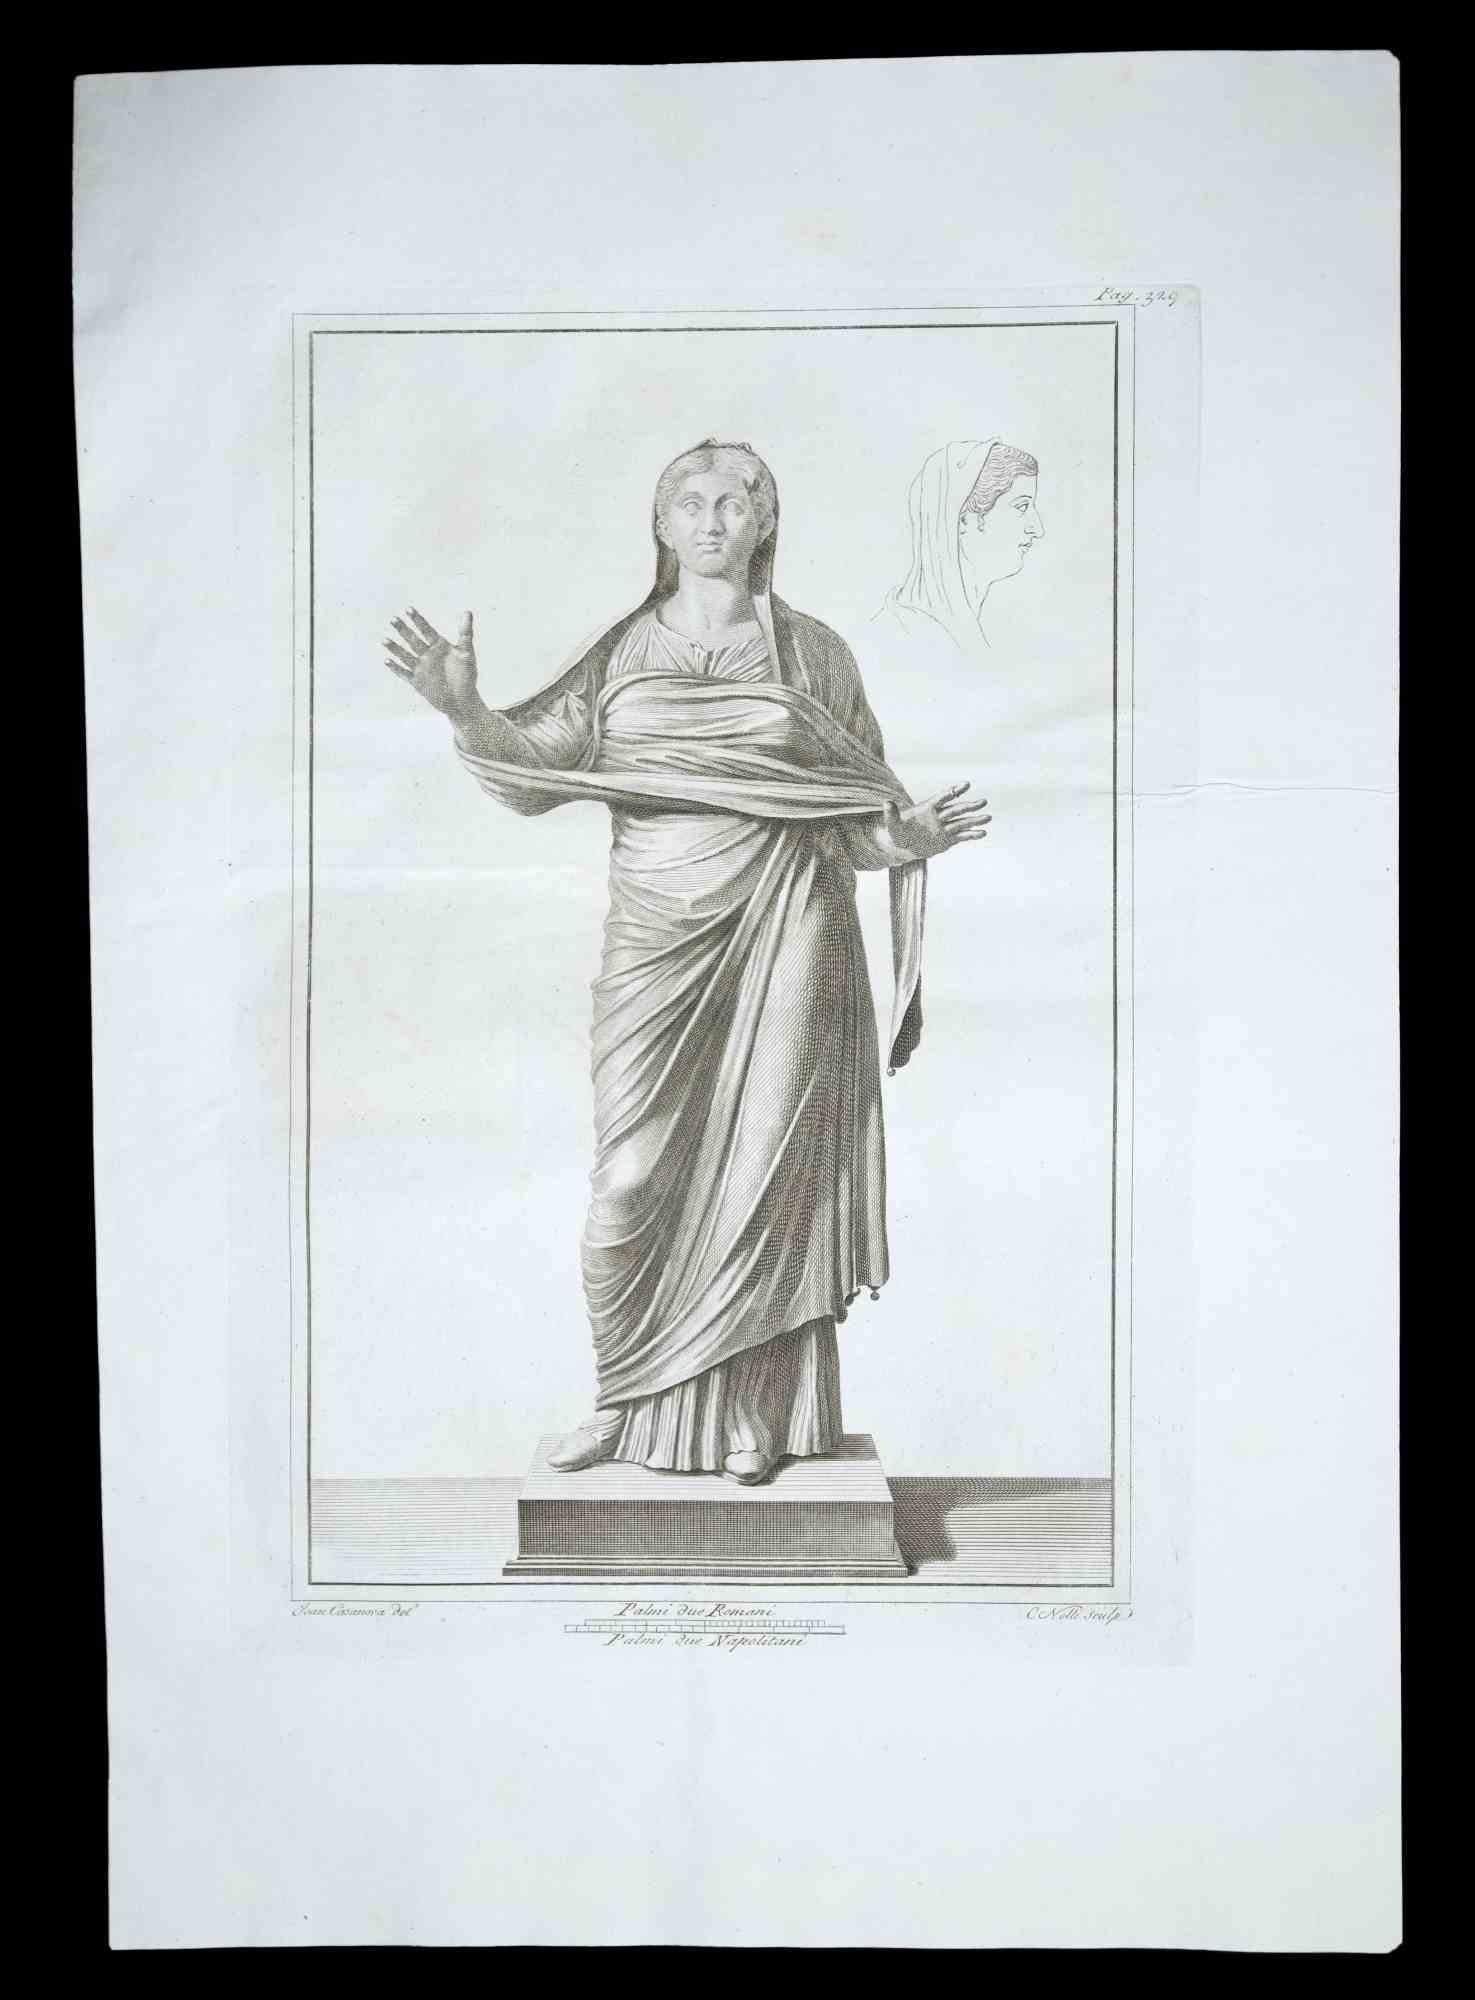 Antike römische Statue, aus der Serie "Antiquitäten von Herculaneum", ist eine Originalradierung auf Papier von Carlo Nolli aus dem 18. Jahrhundert.

Signiert auf der Platte unten rechts.

Guter Zustand mit leichten Stockflecken.

Die Radierung